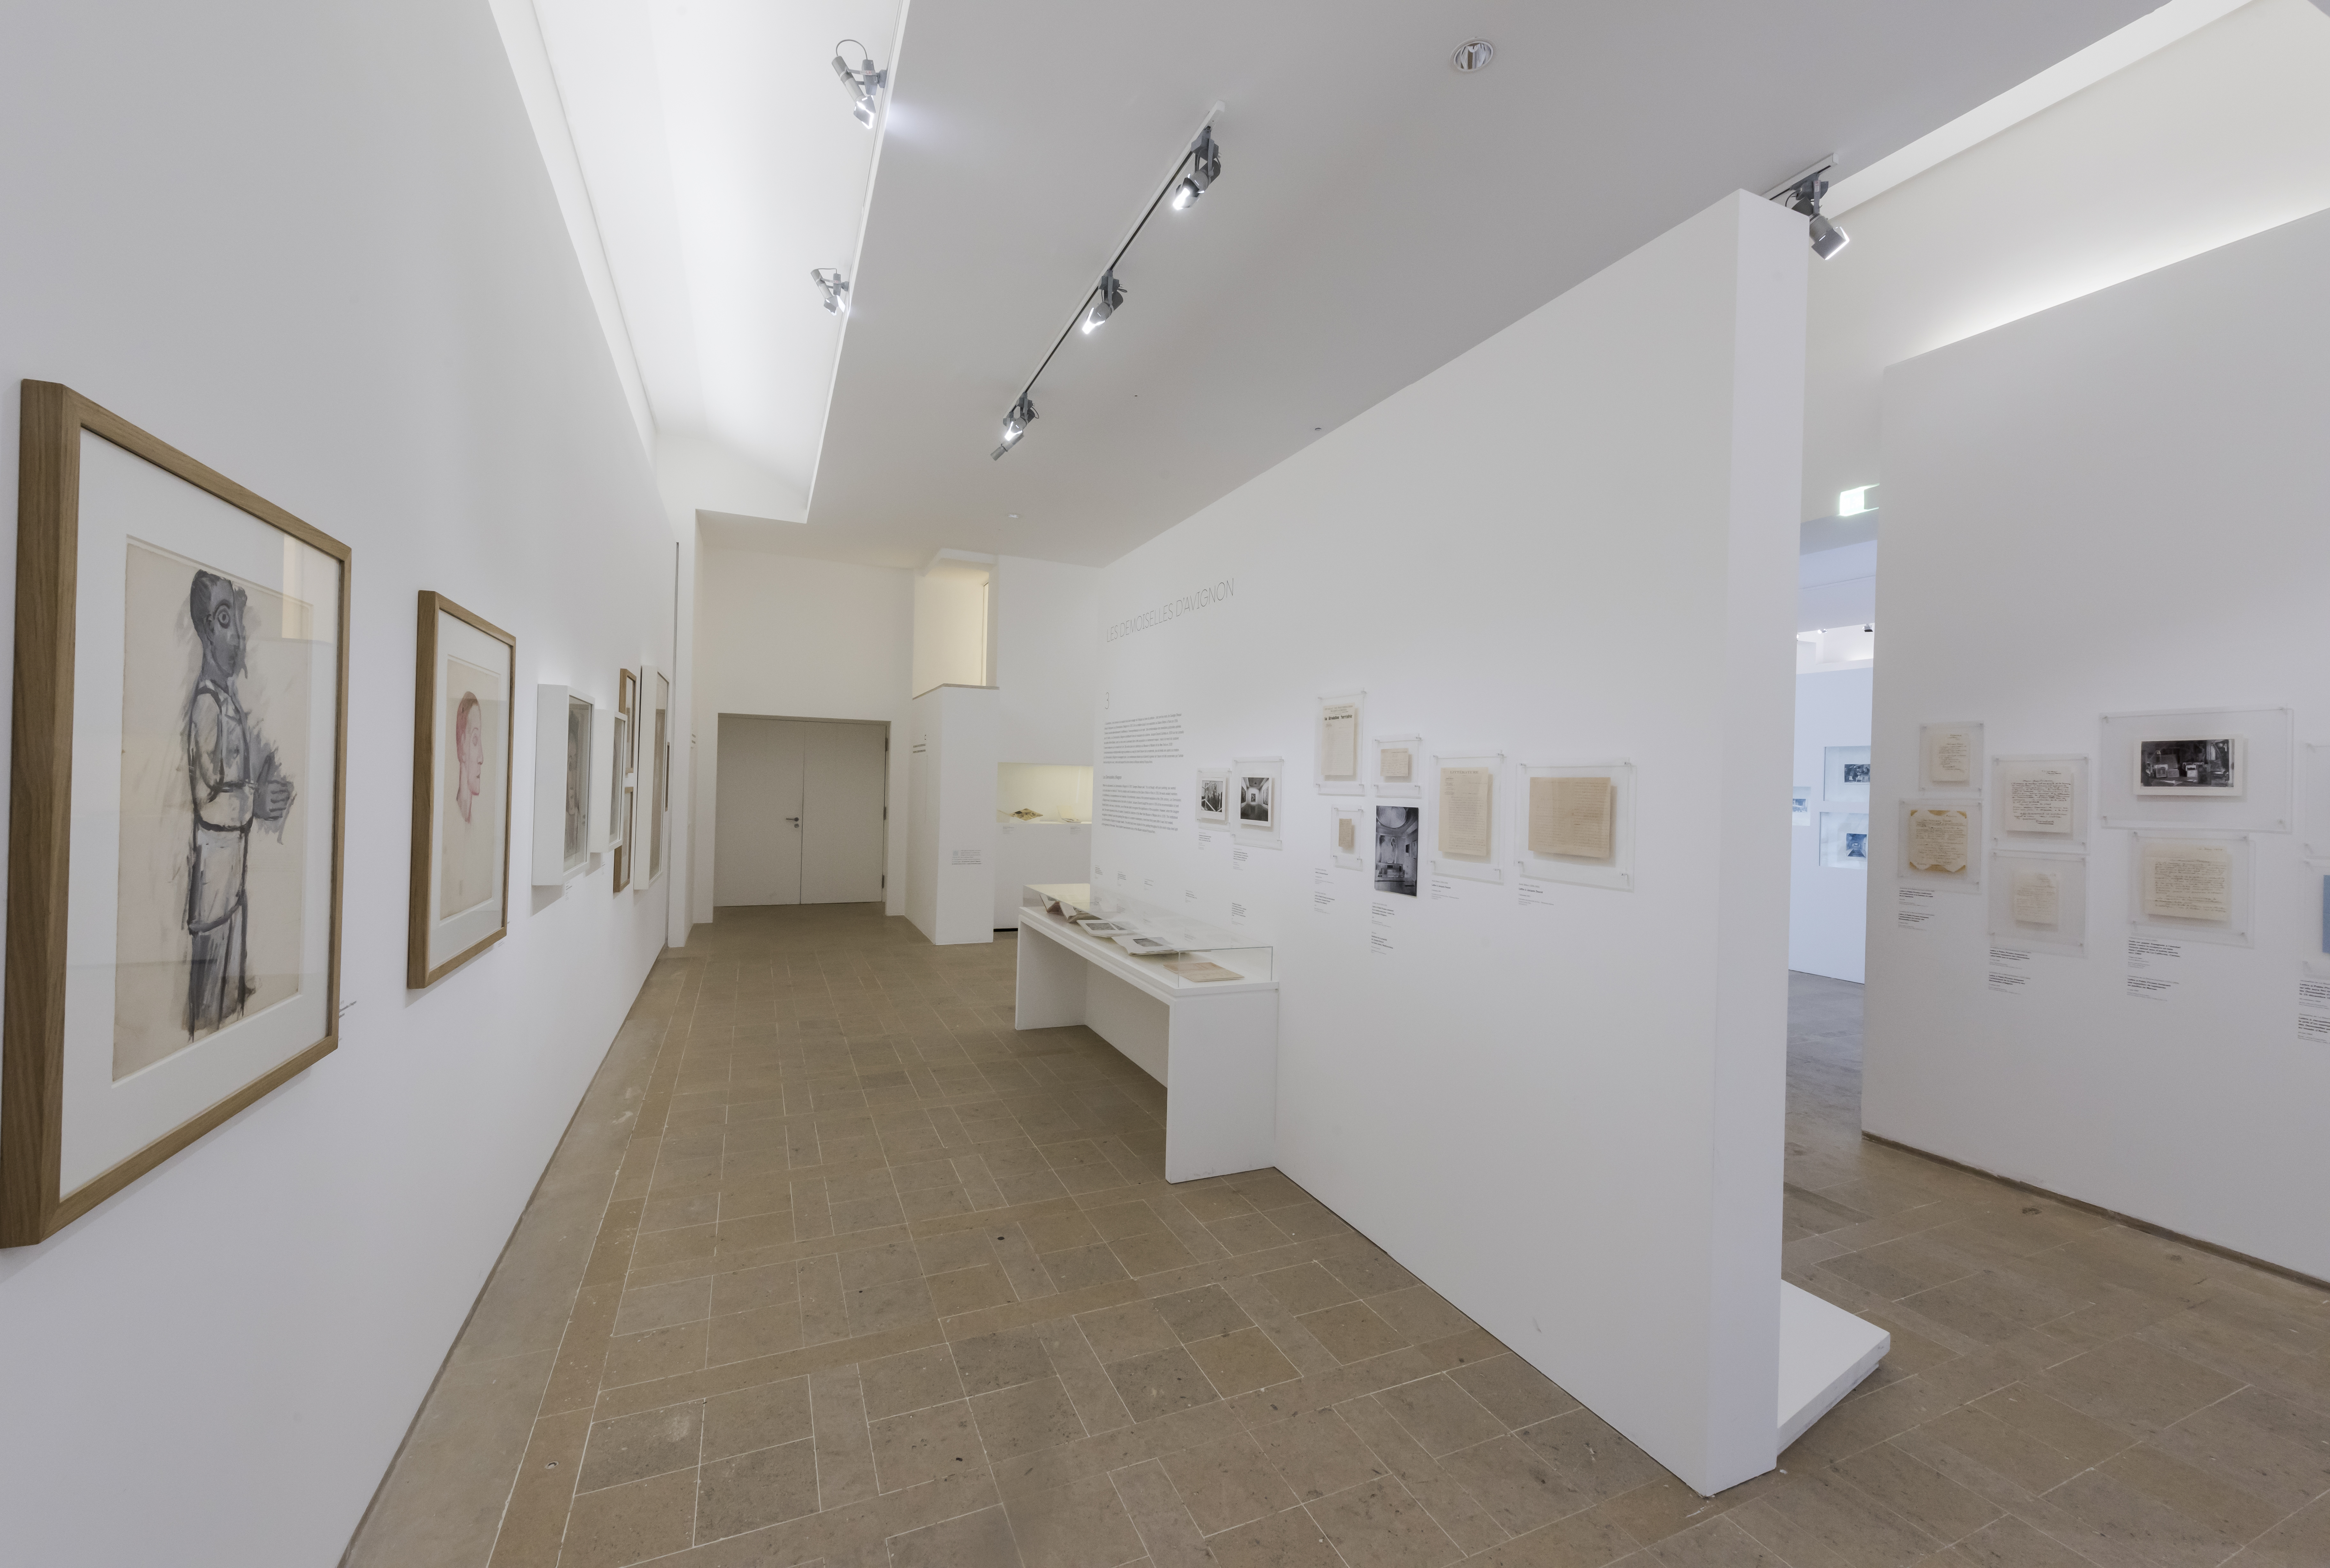 Salles de l'exposition Picasso chefs d'oeuvre